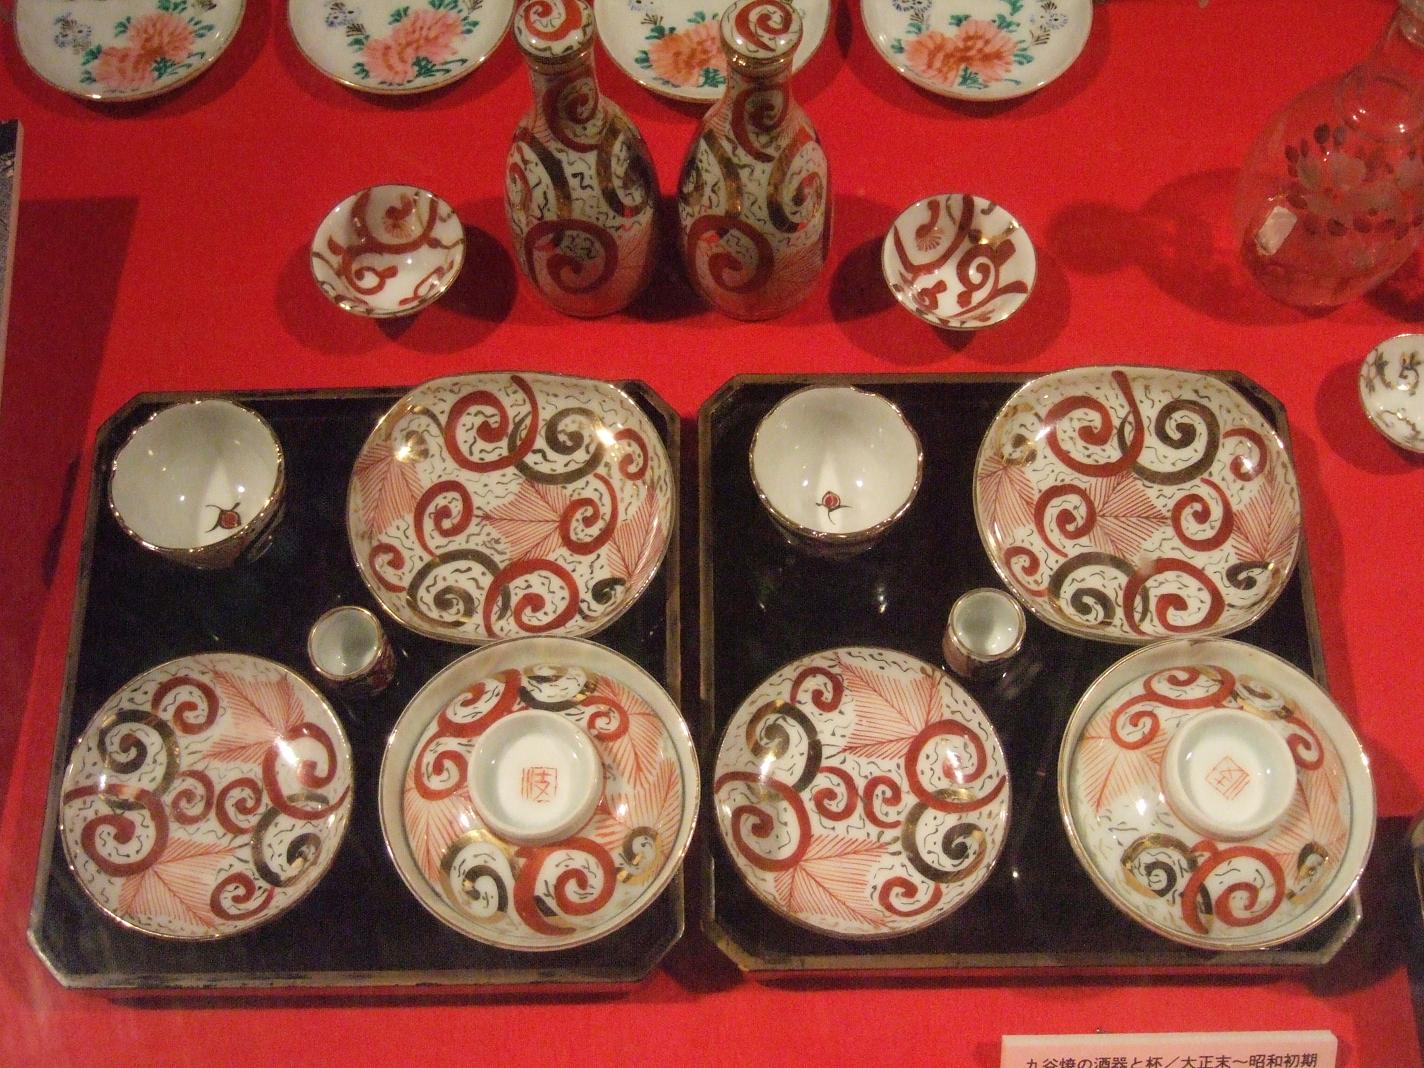 「雛料理の器いろいろ」 | 日本玩具博物館